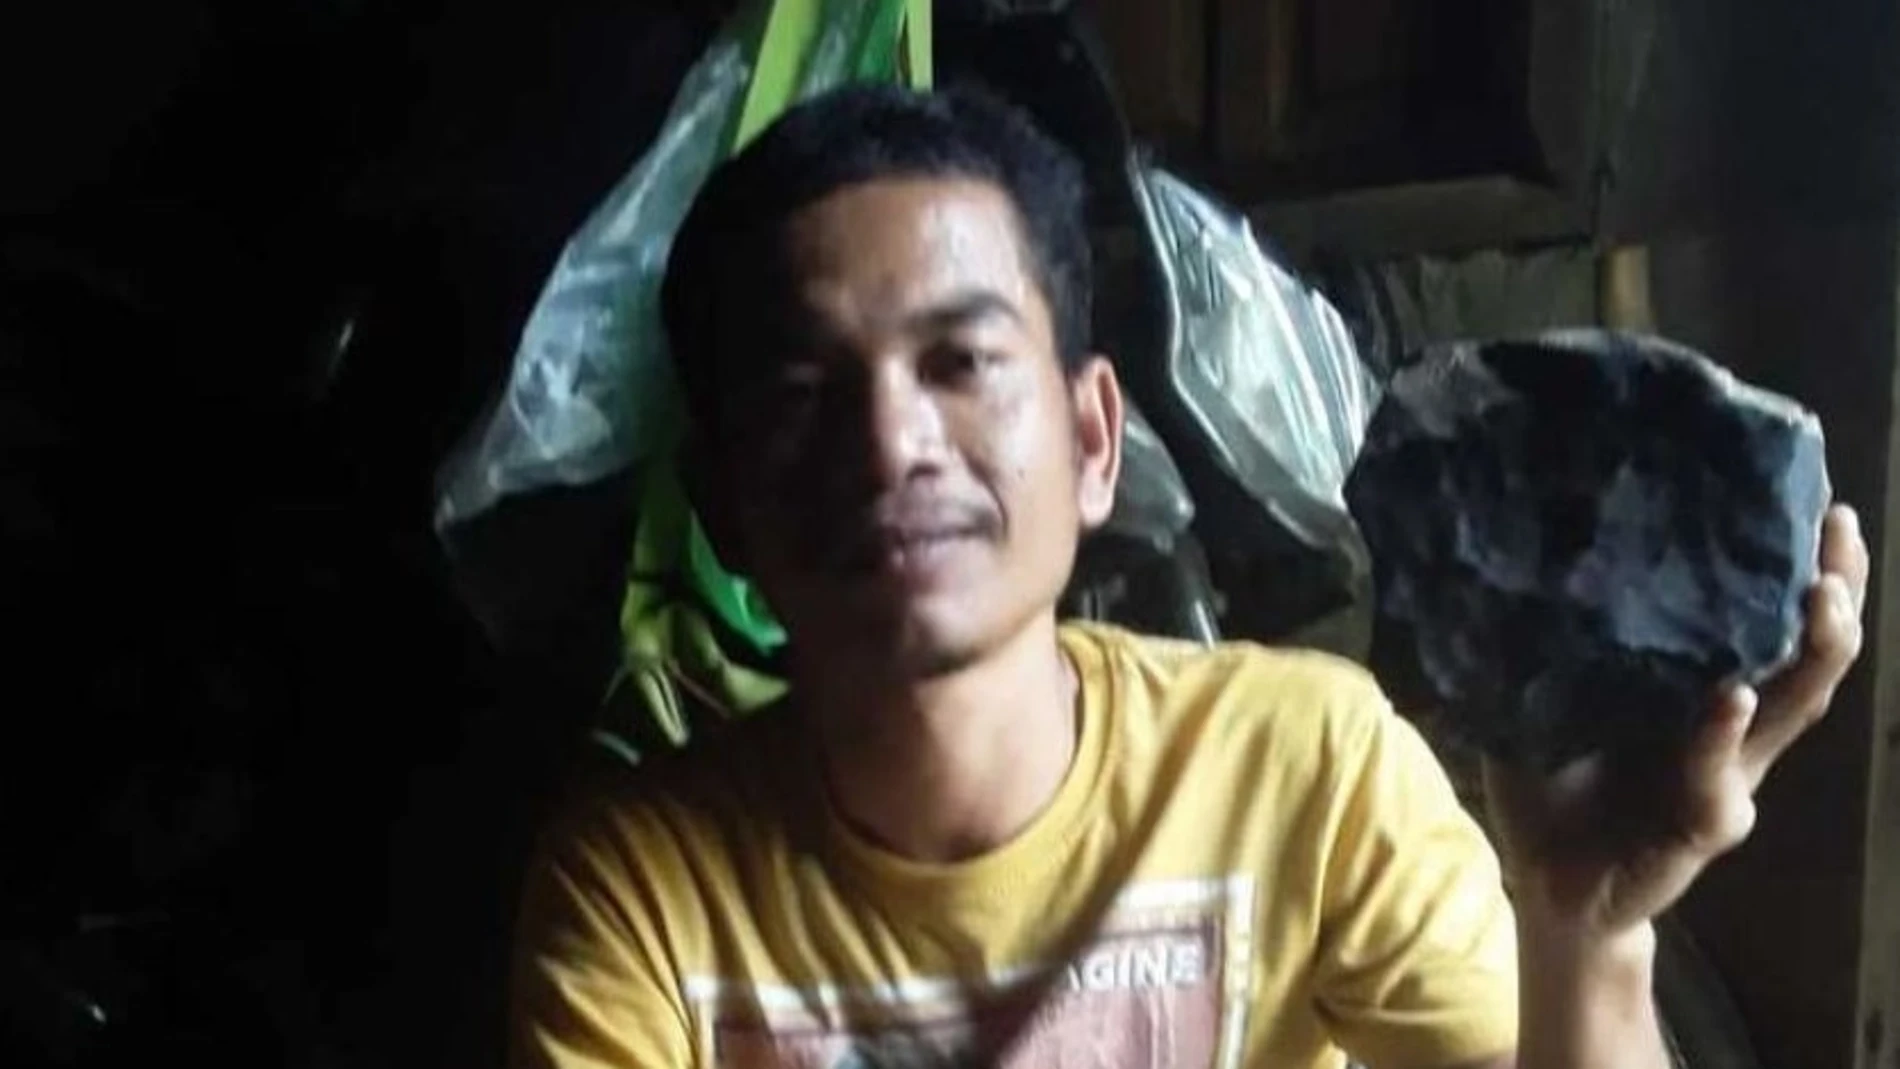 Josua Hutagalung con la piedra de 2.1 kg que atravesó el tejado de su casa en Indonesia.